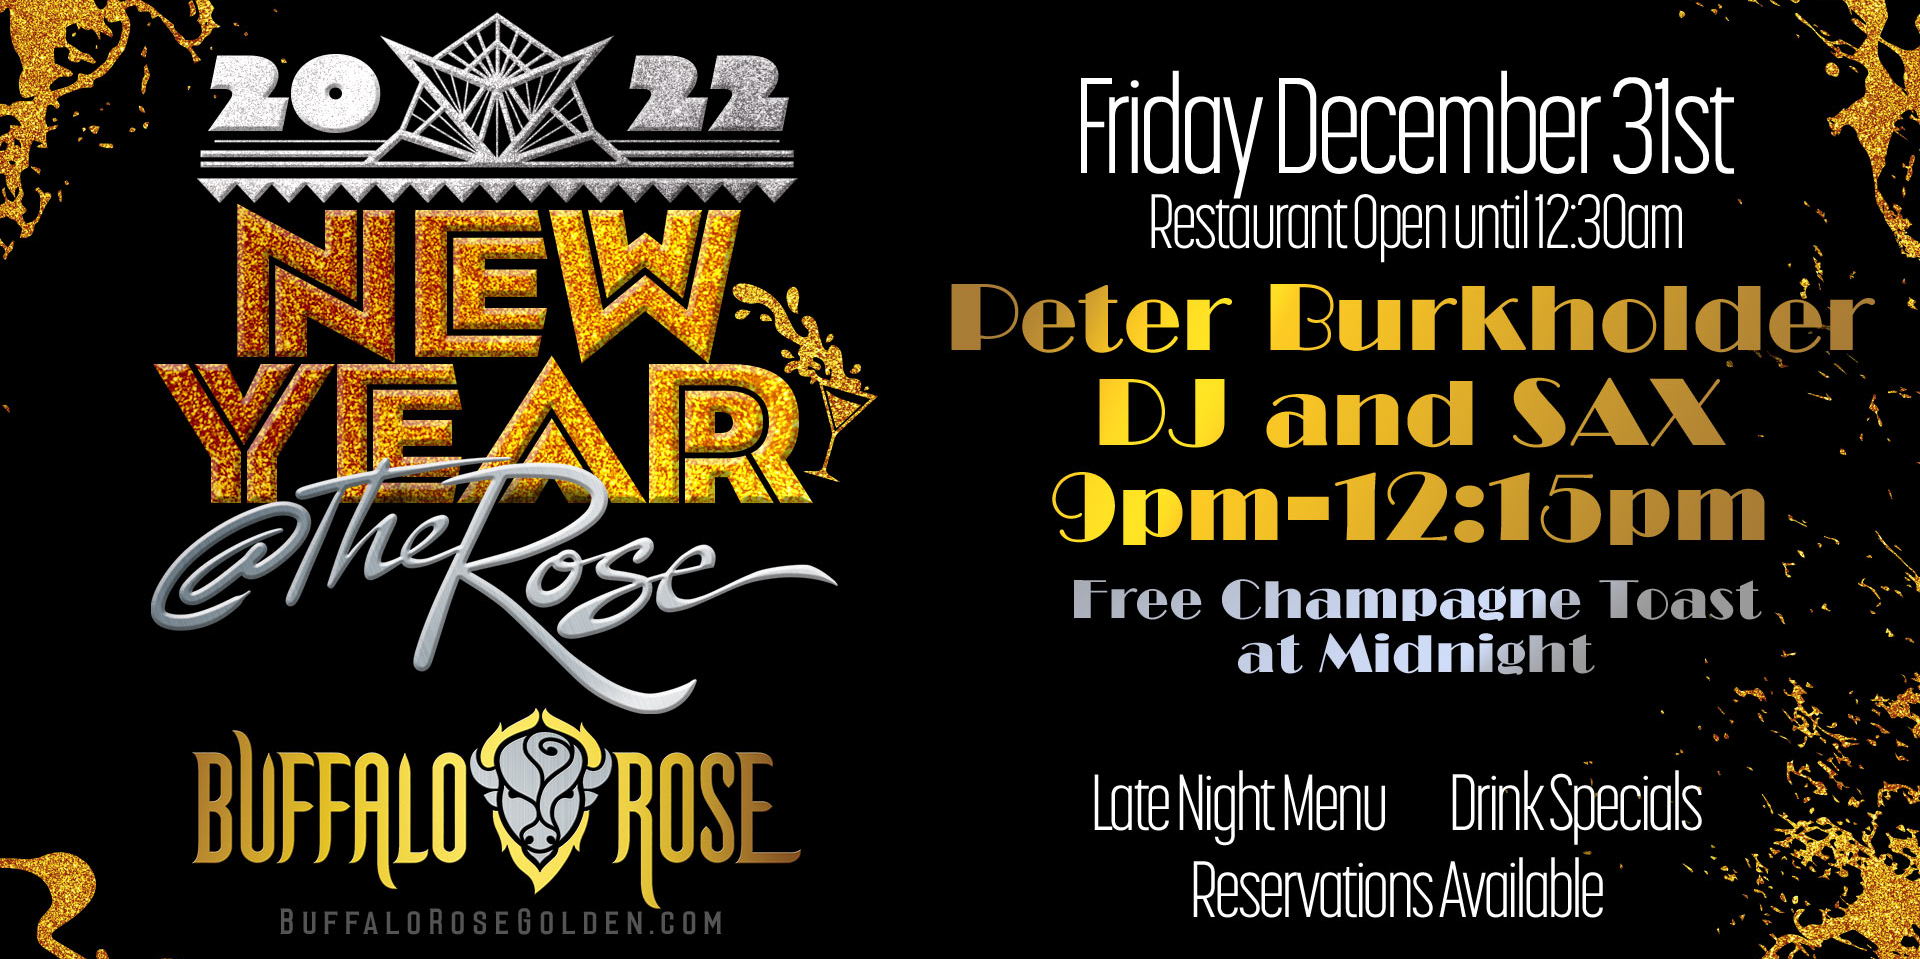 New Year Celebration @ Buffalo Rose Restaurant  promotional image